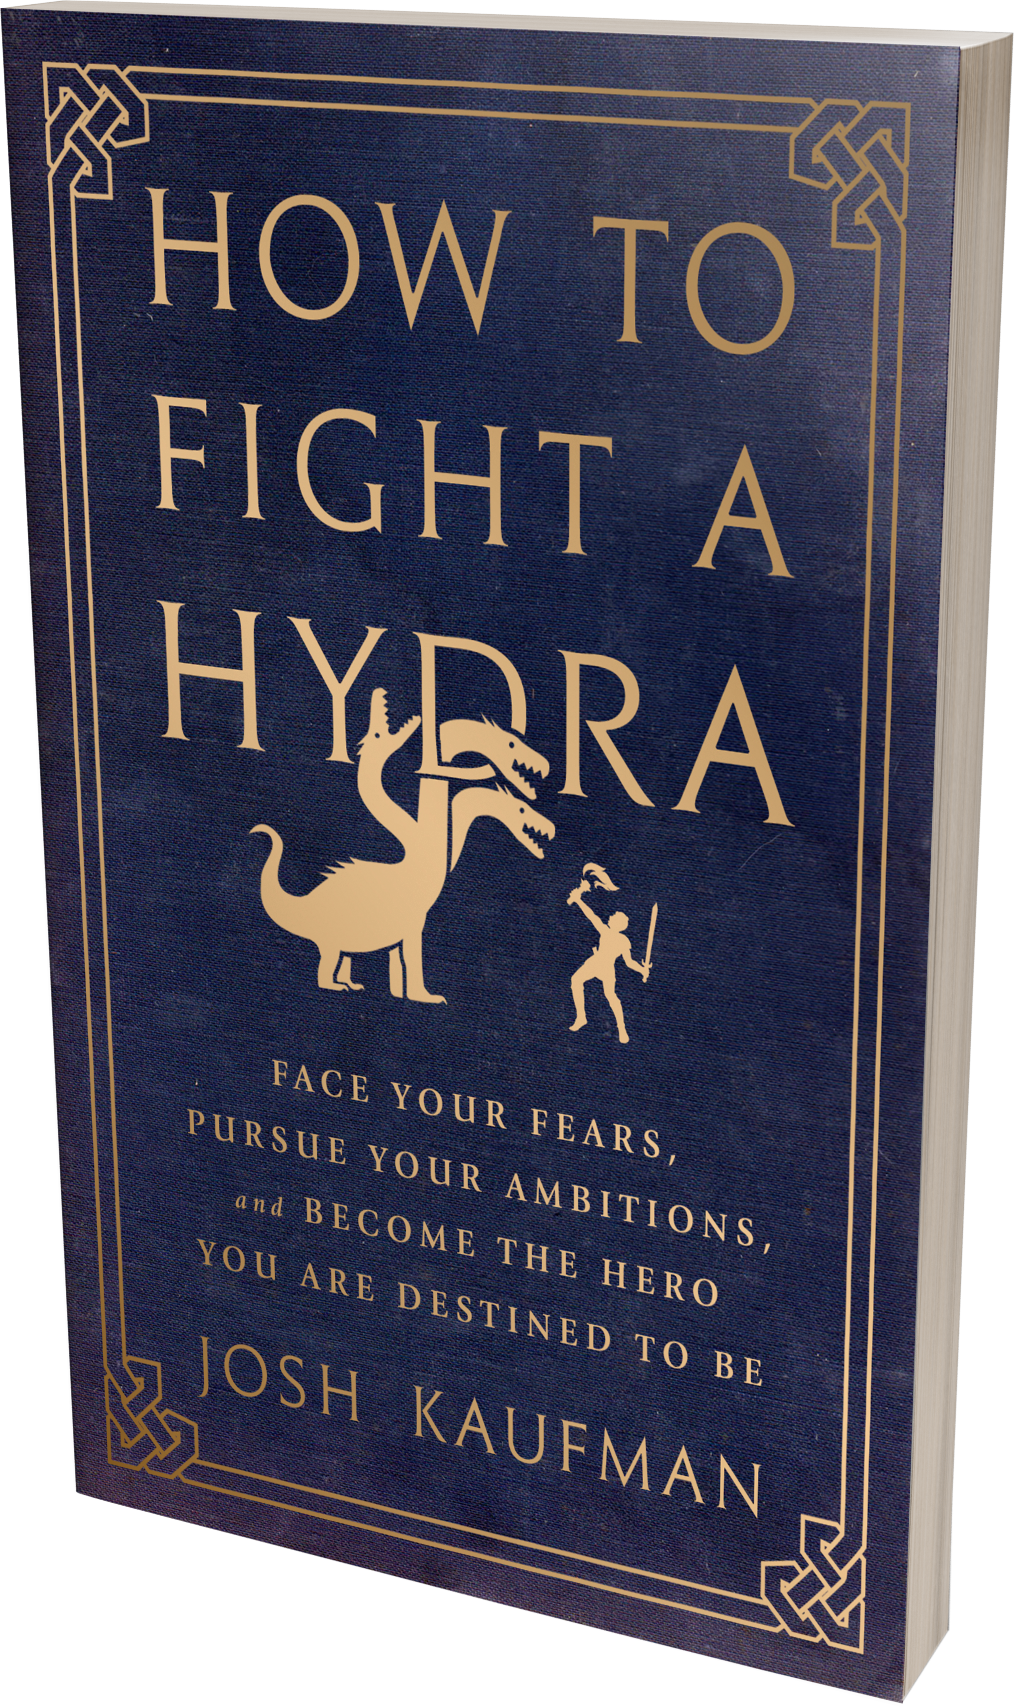 Howto Fighta Hydra Book Cover